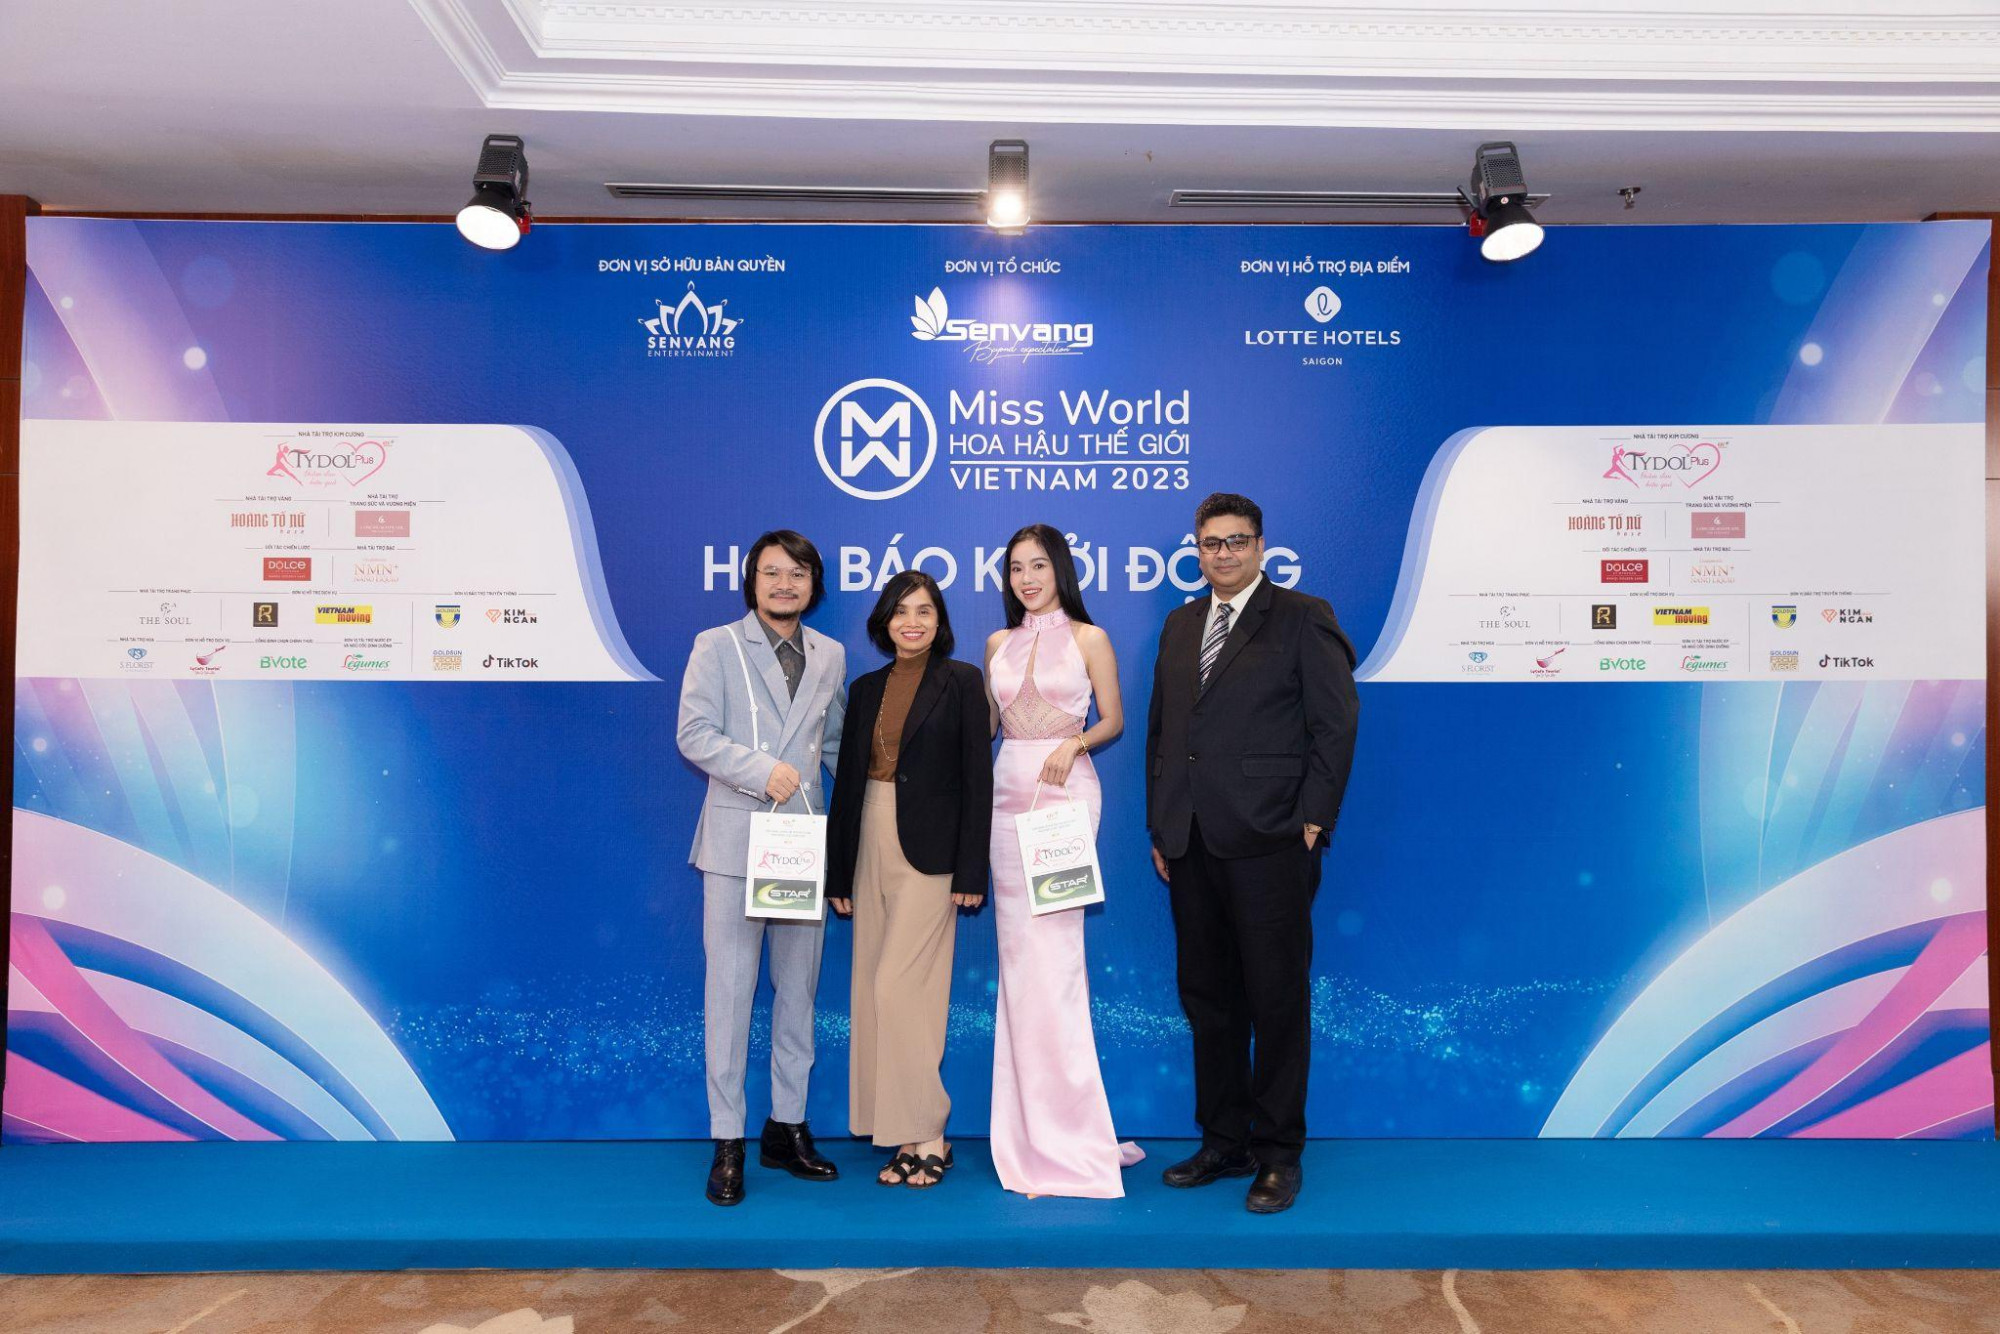 Thạc sĩ Phạm Kim Dung và đạo diễn Hoàng Nhật Nam nhận quà tặng từ TYDOL Plus tại thảm đỏ Họp báo Khởi động Miss World Vietnam 2023 - Ảnh: RV-OPV